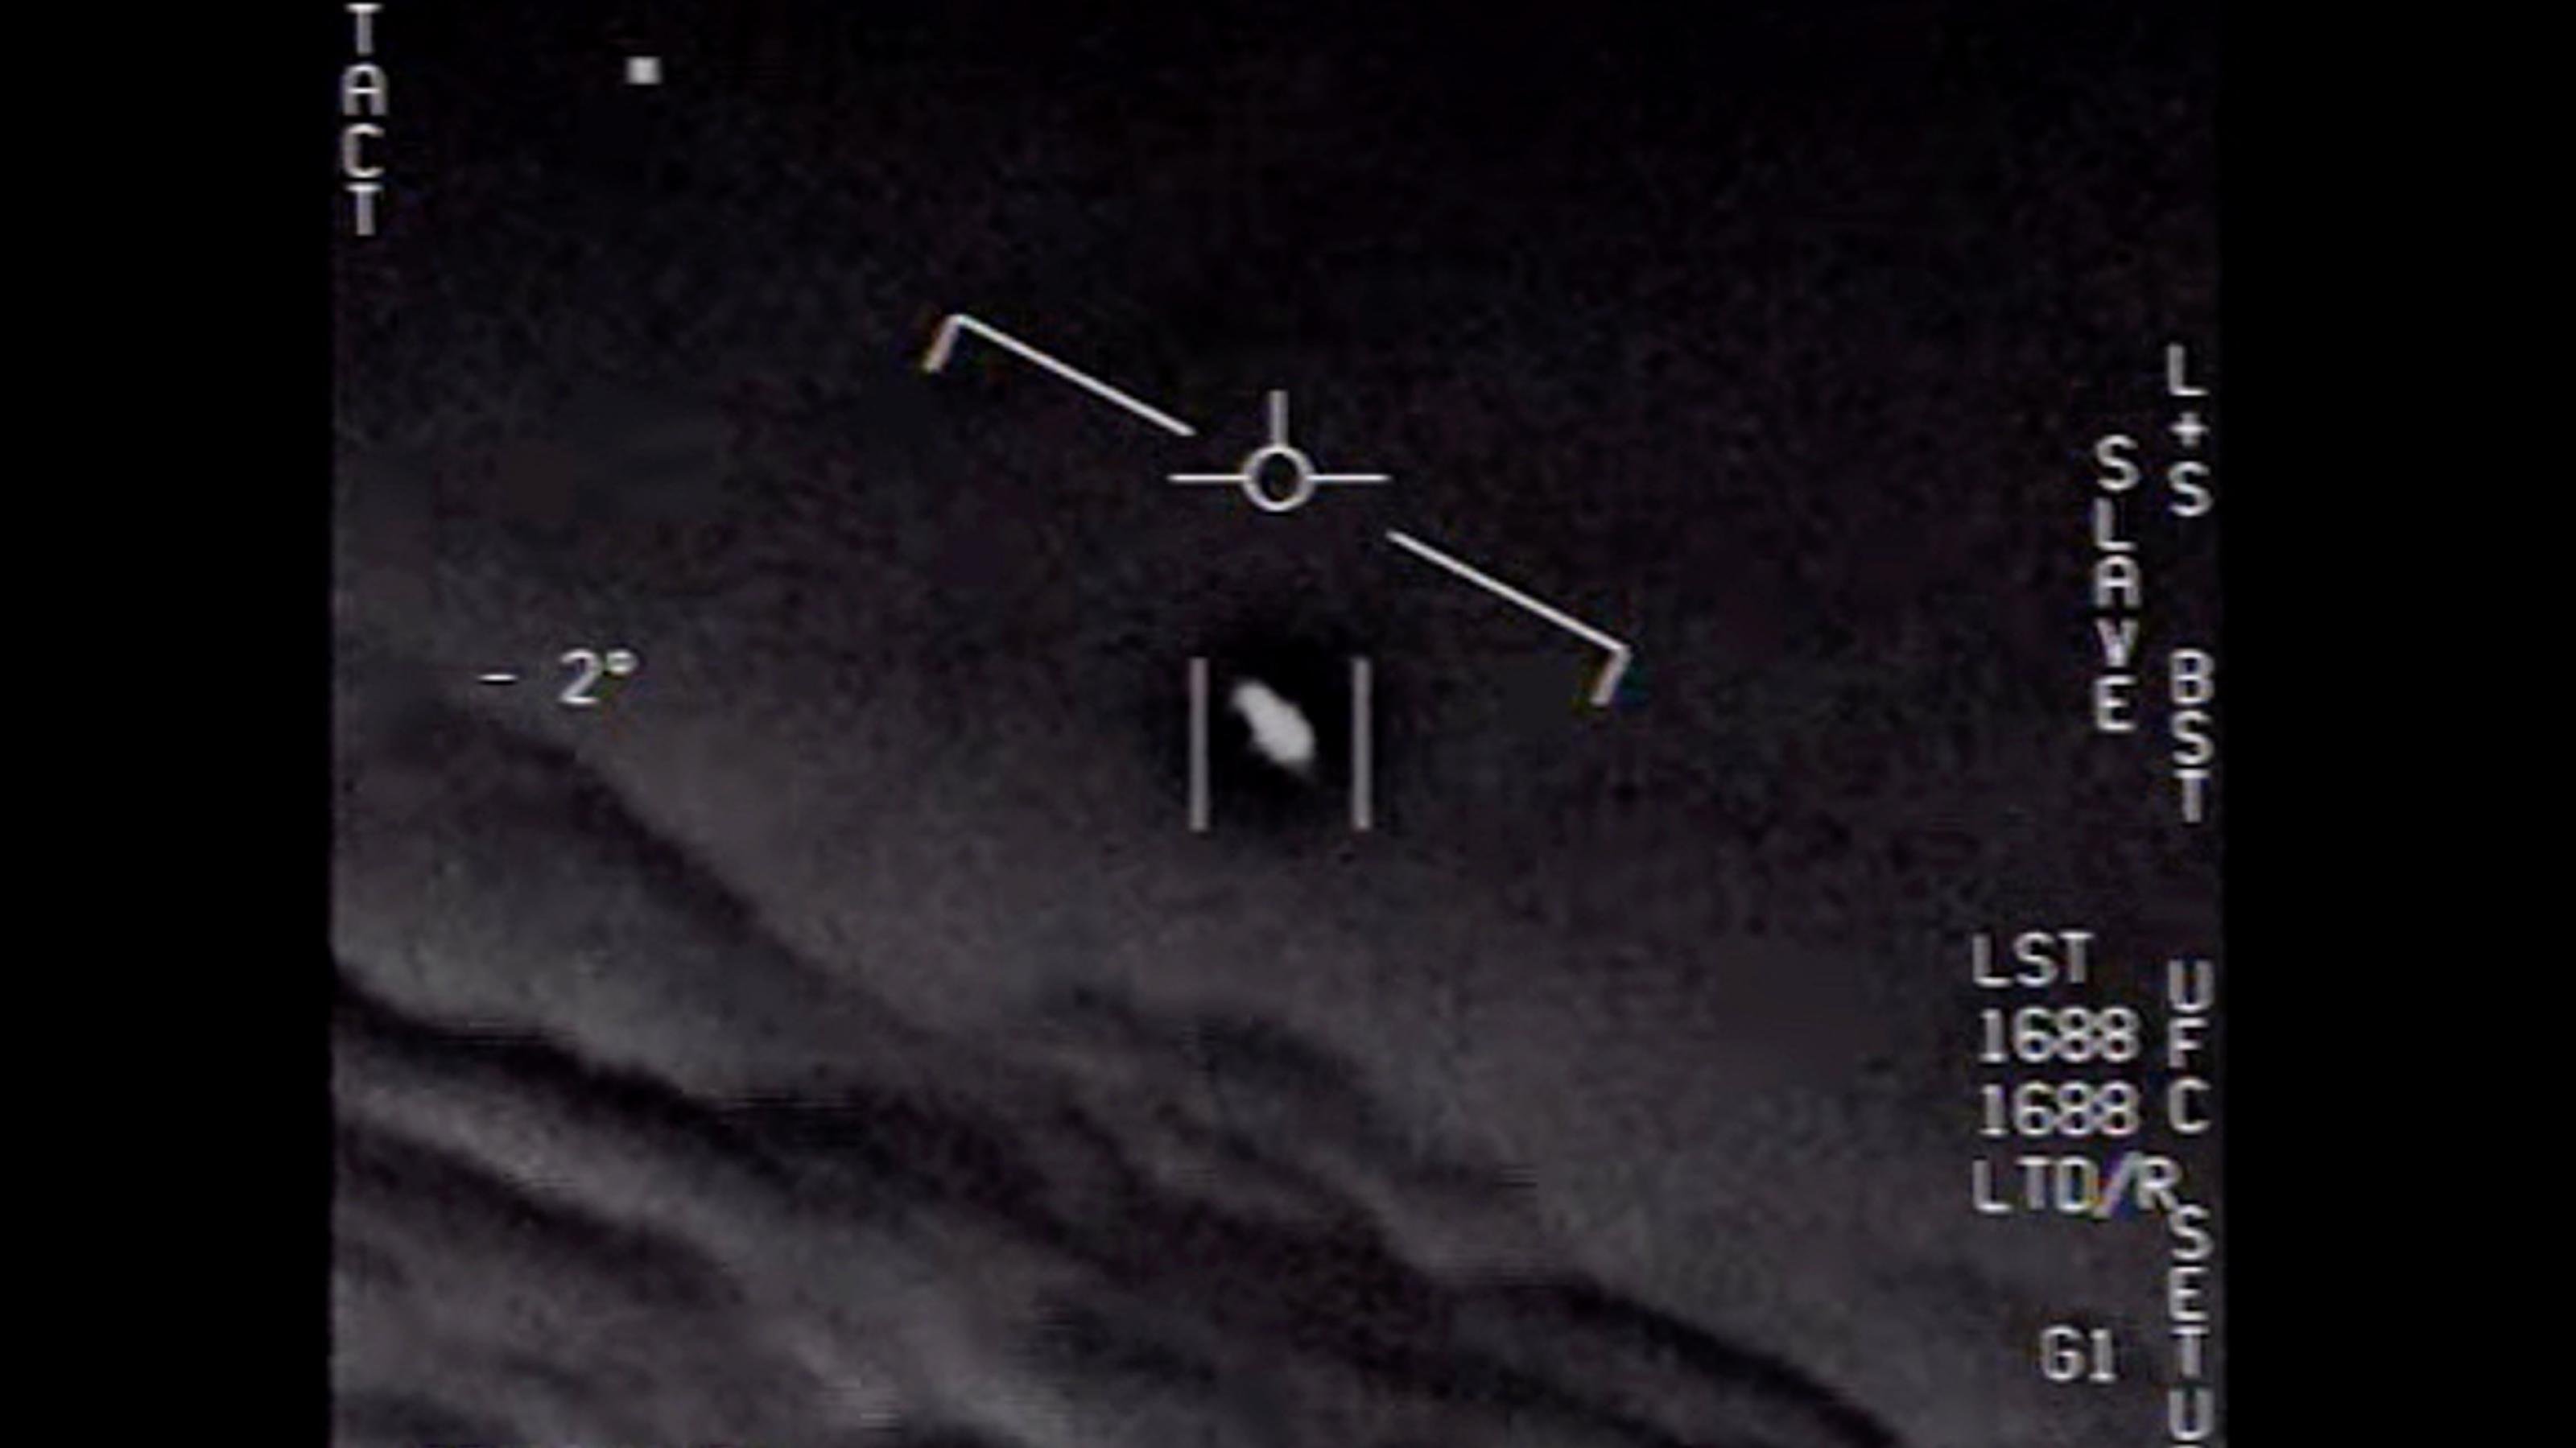 Foto aus einem Video des US-Militärs, das aus dem Cockpit eines Kampfpiloten stammt. Im Visier ein kleiner schwarzer Fleck, der sich mit großer Geschwindigkeit bewegte.